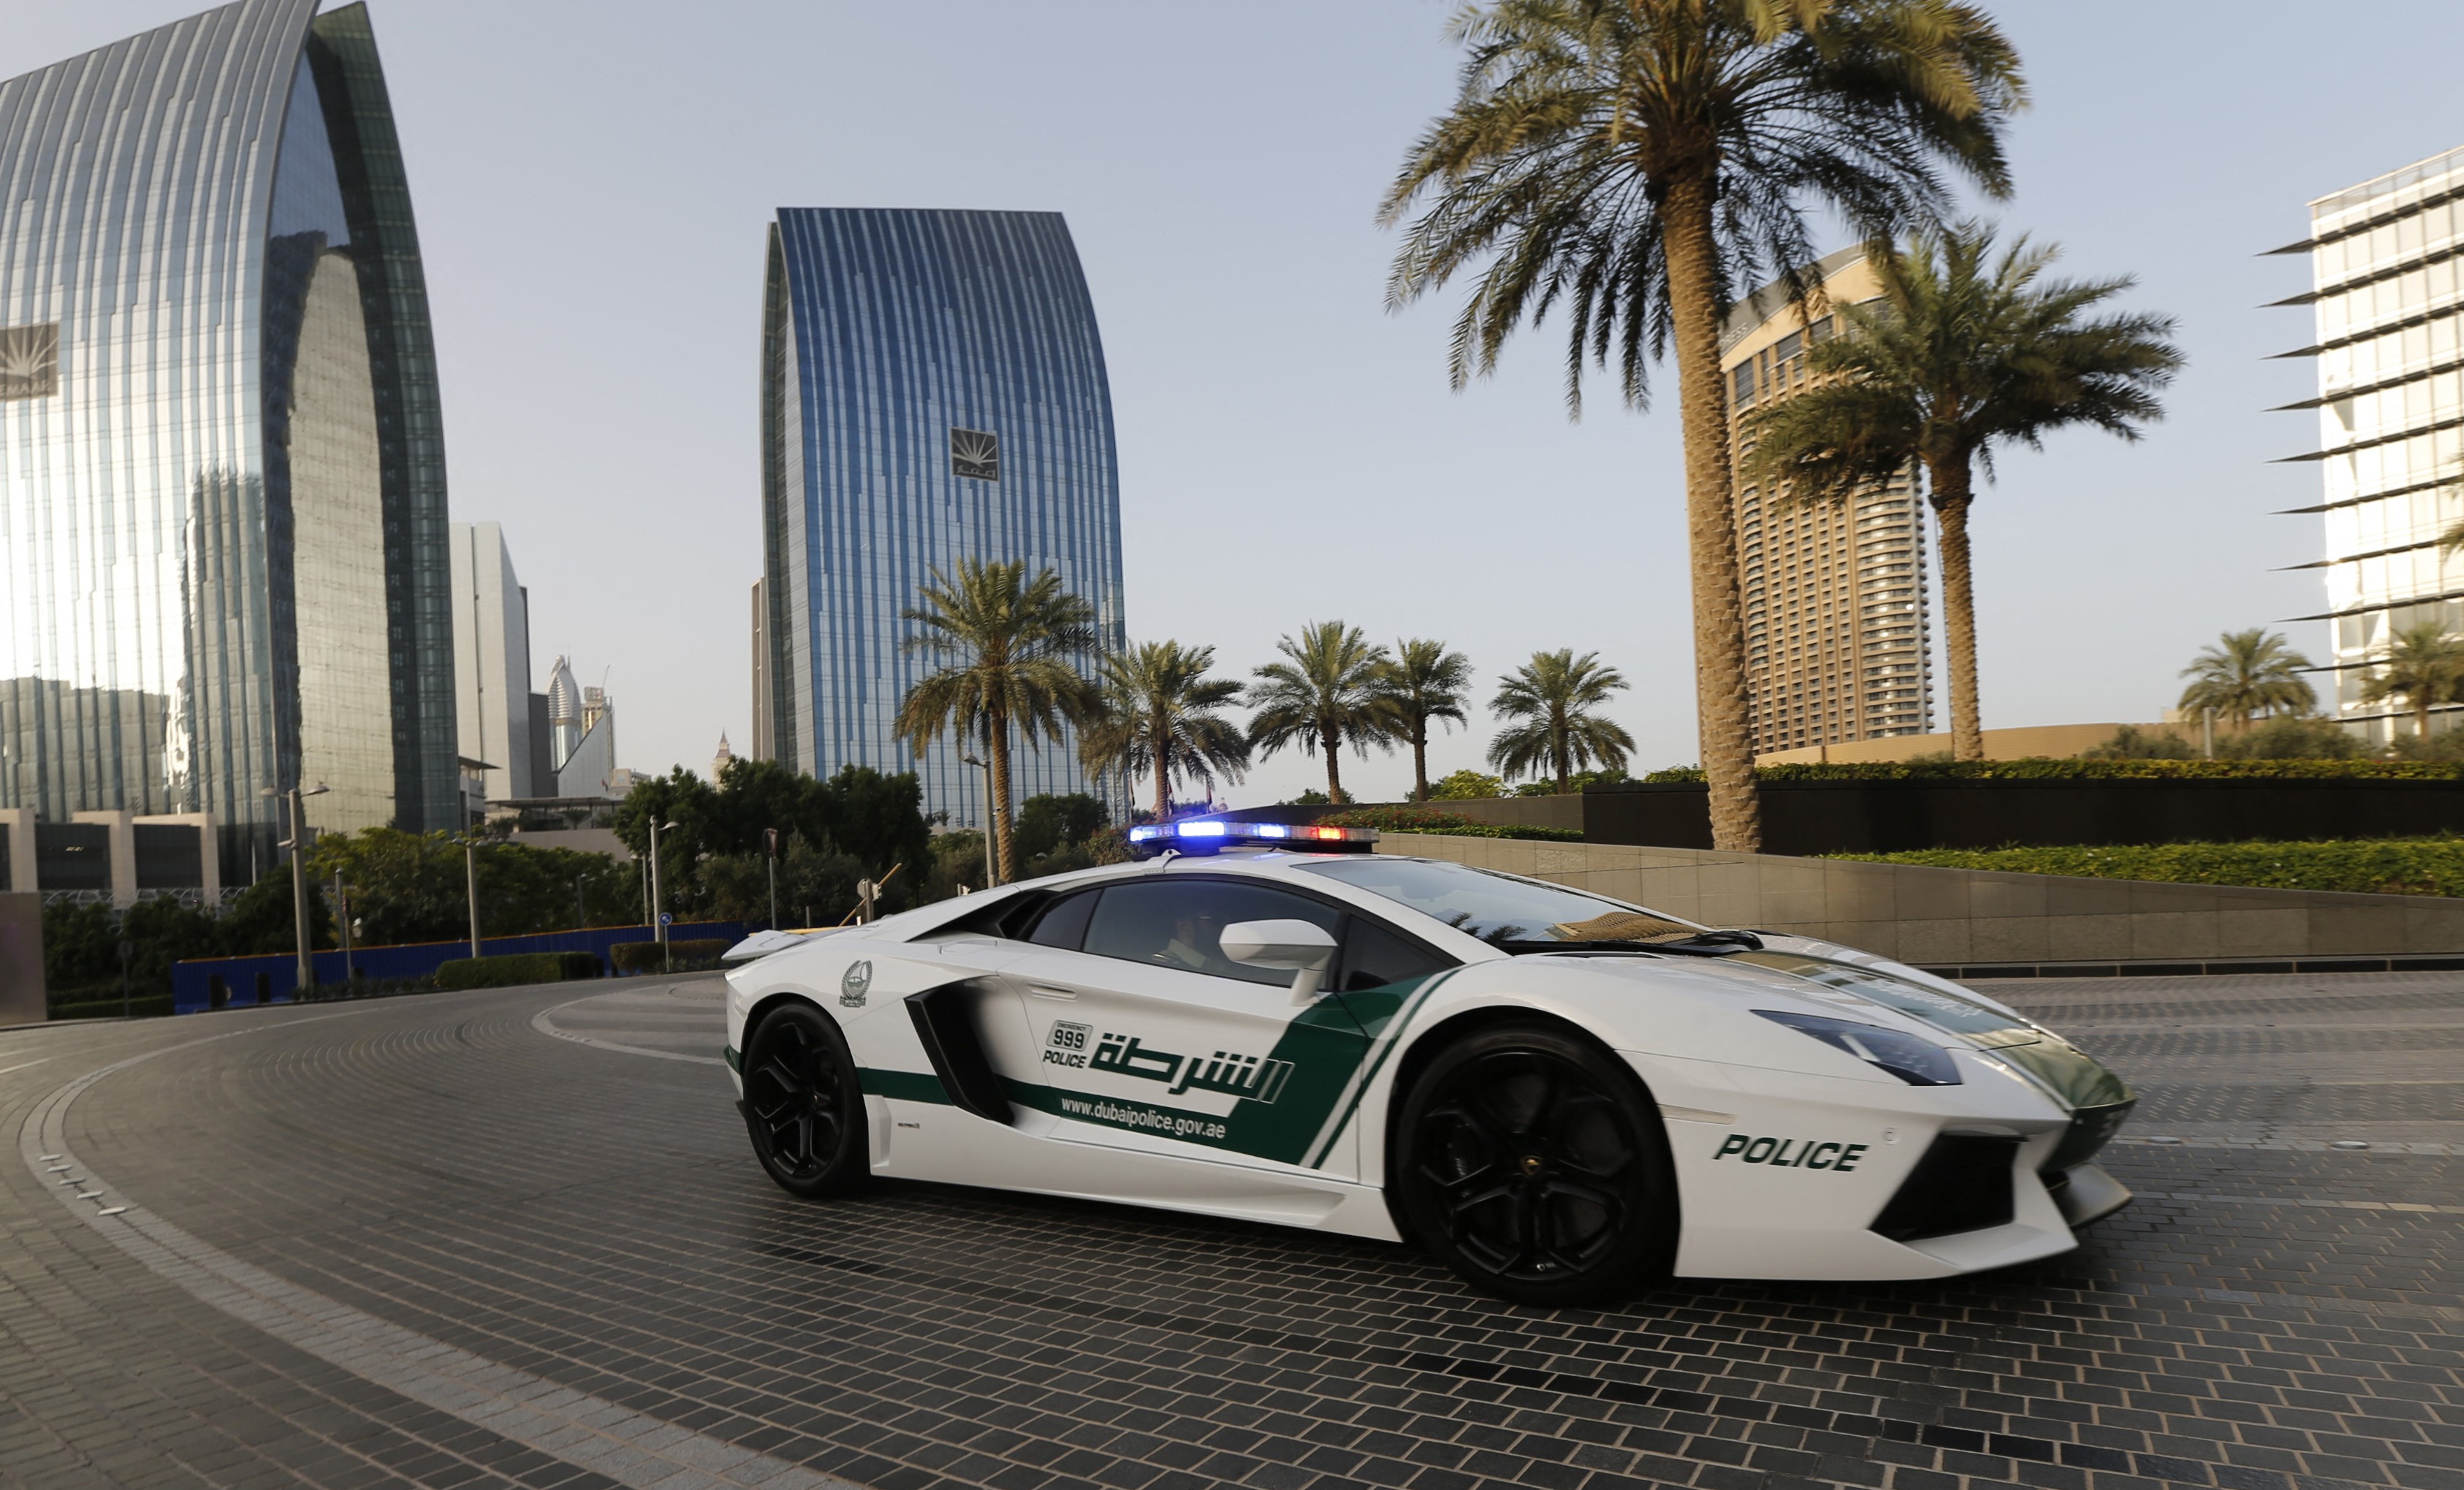 Дубайские машины. Ламборгини авентадор полиция Дубая. Ламборджини полиция Дубай. Дубайская Полицейская Ламборджини. Полиция в ОАЭ Ламборгини.